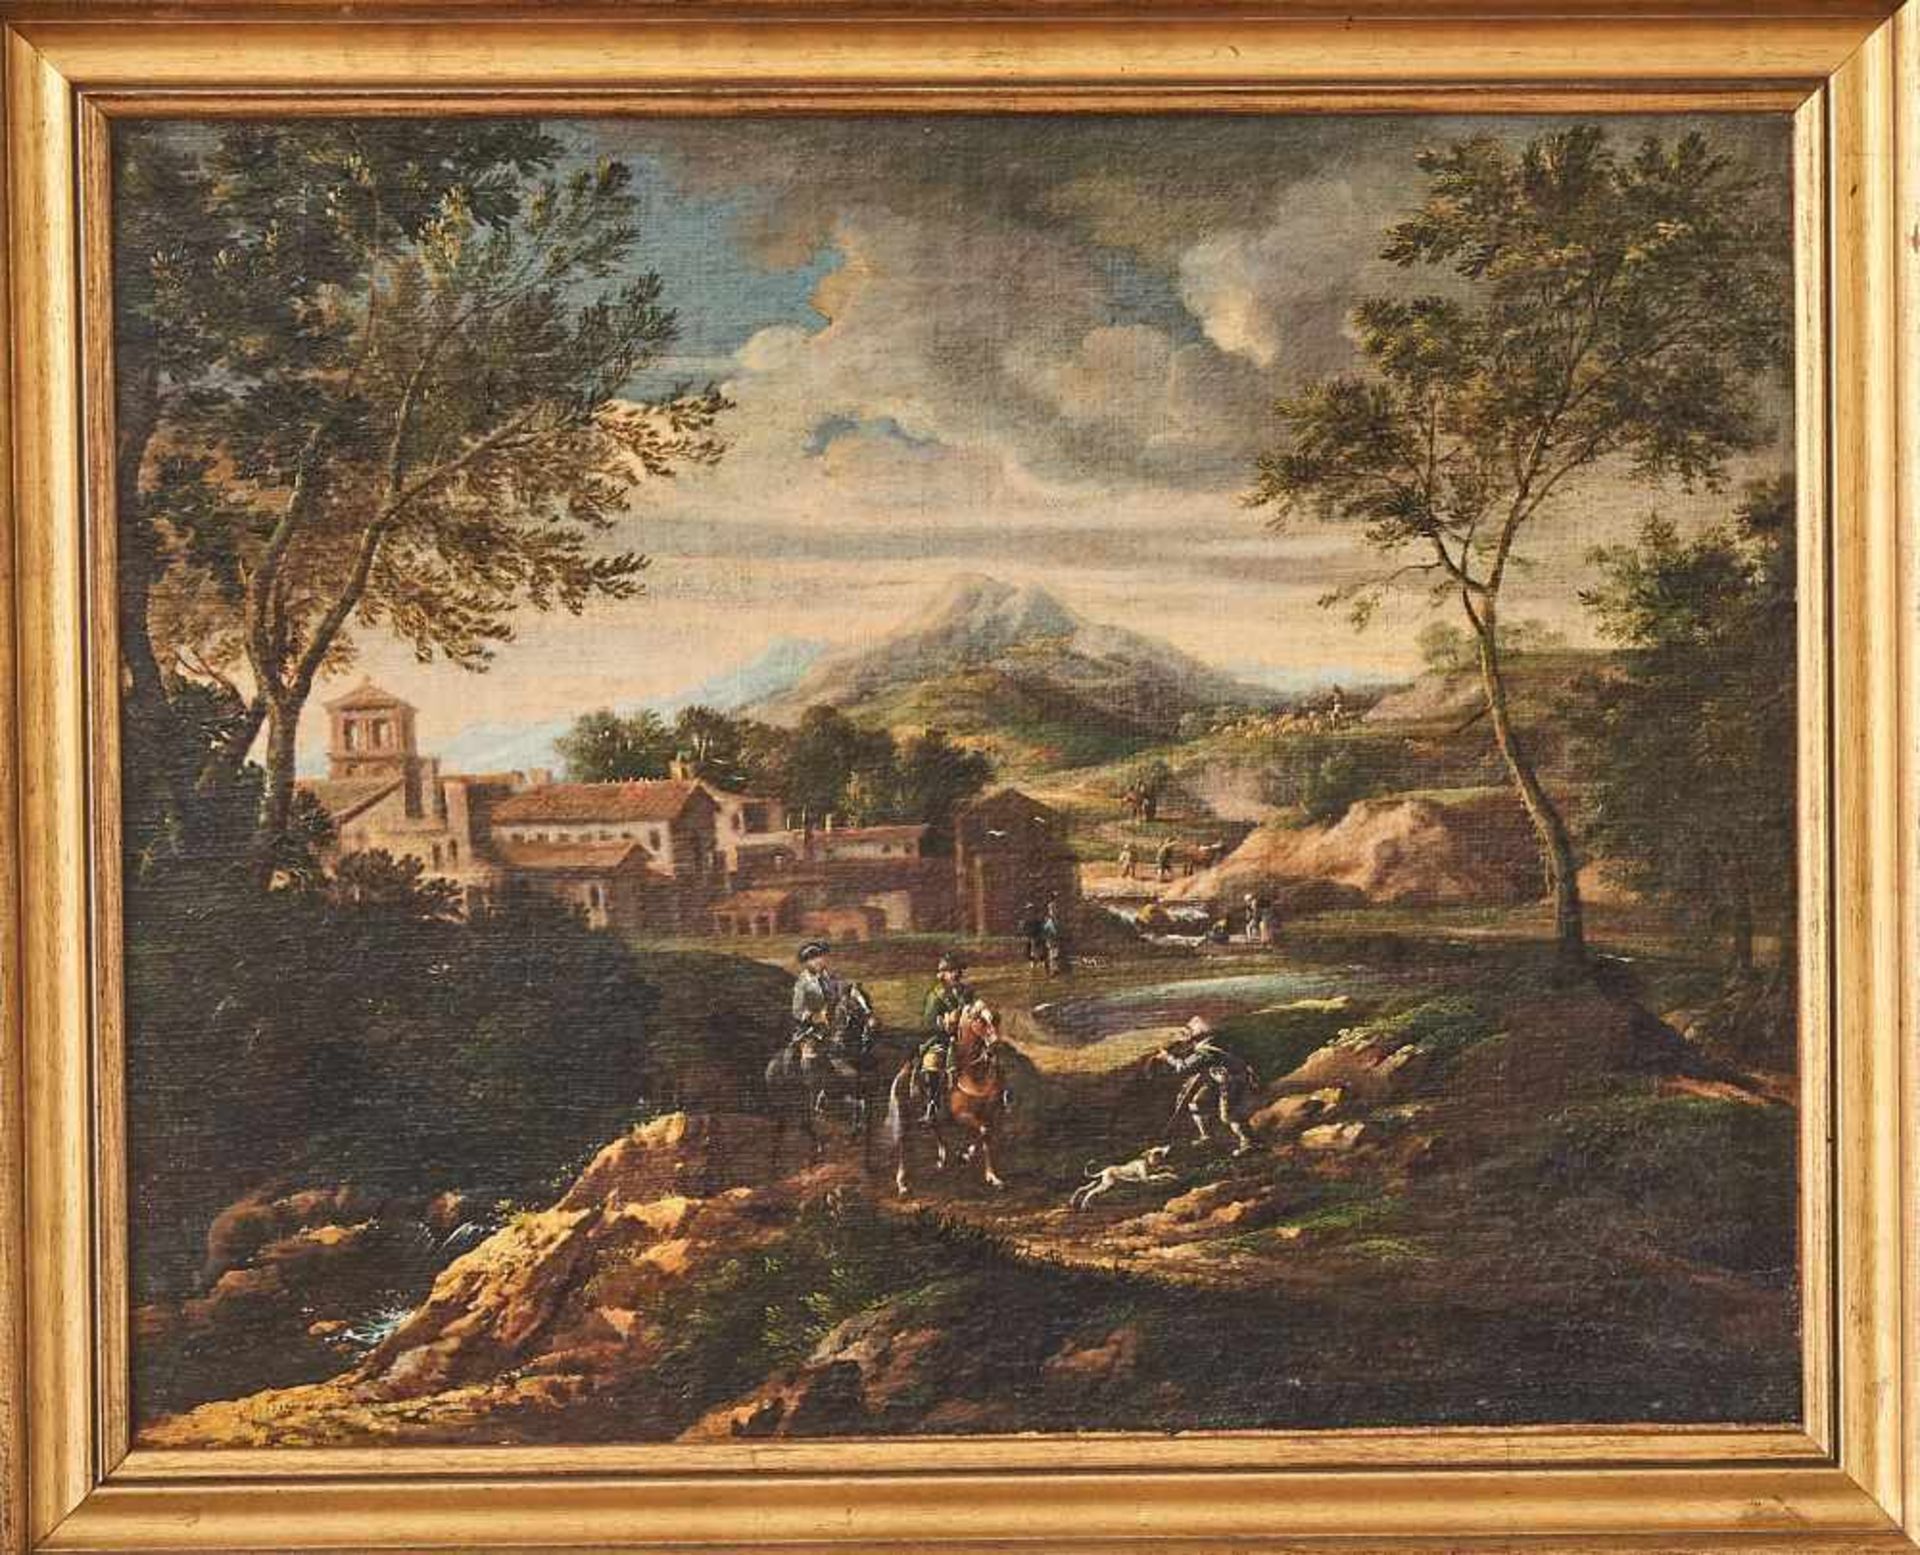 Burglandschaft mit ReiternWillem Gerritsz zugeschr. Van BemmelÖl auf Leinwand, gerahmt. 49 x 61 - Image 2 of 2